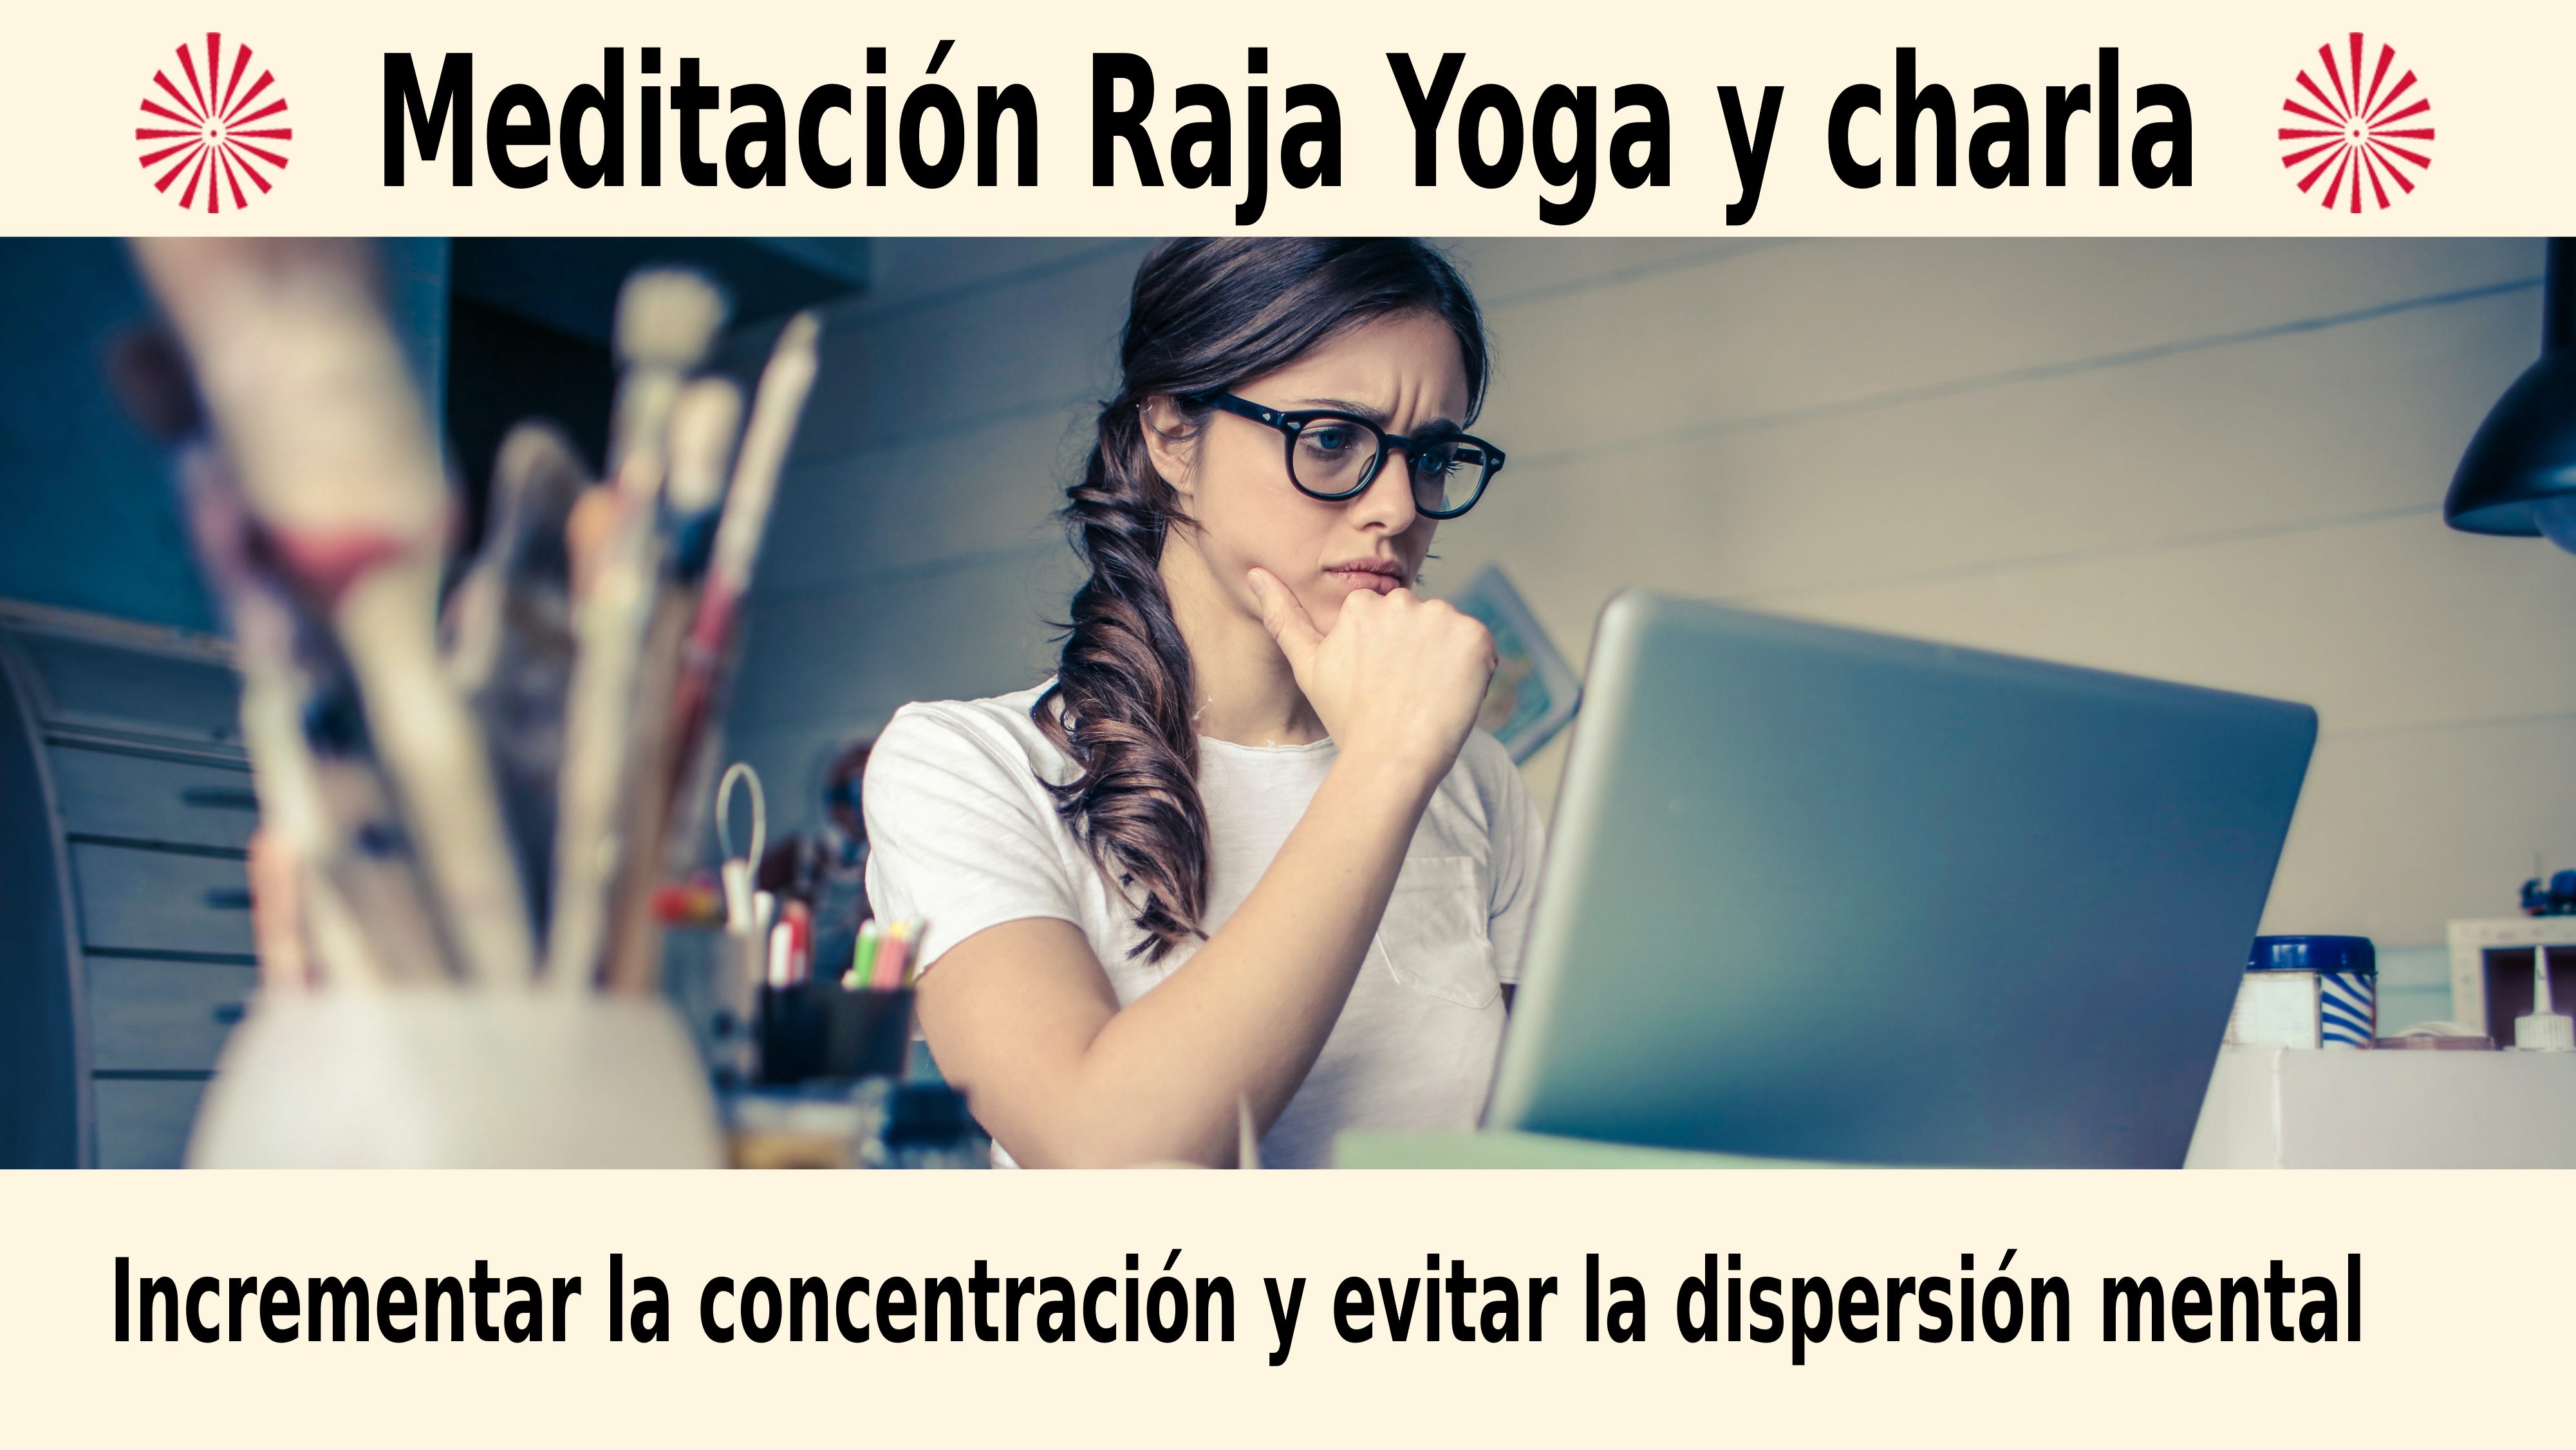 Meditación Raja Yoga y charla: Incrementar la concentración (21 Diciembre 2020) On-line desde Mallorca